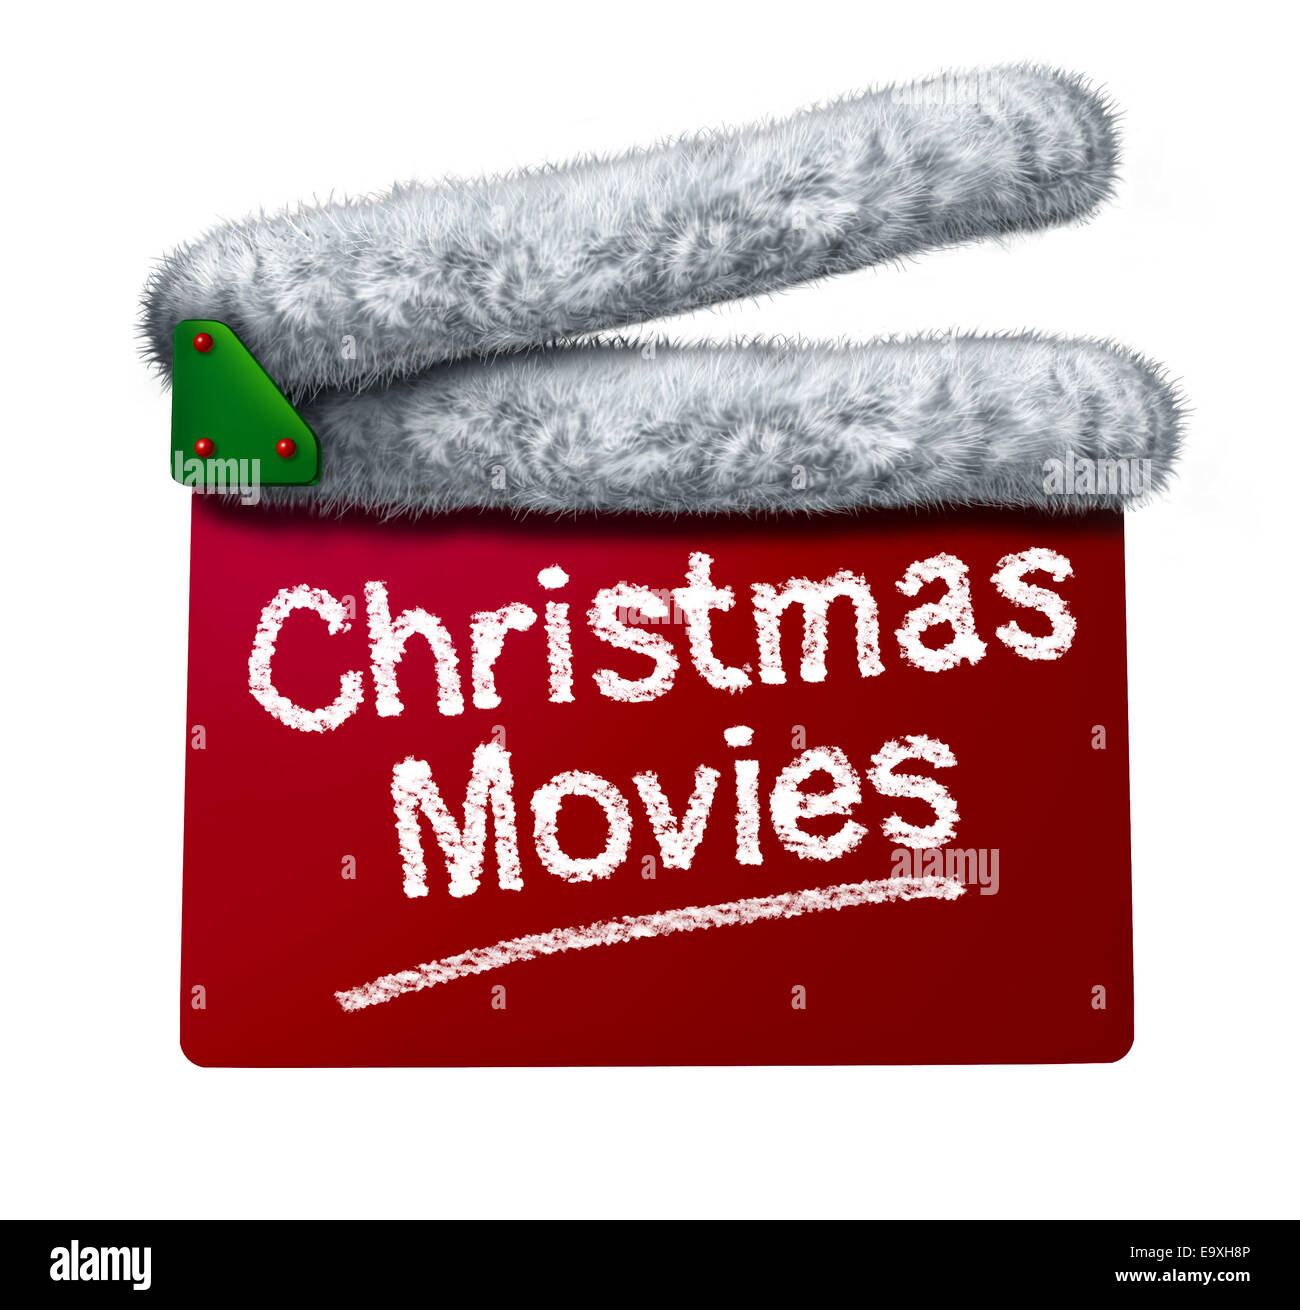 Weihnachts-Filme und Urlaub klassische Kino und TV flicks mit einem roten Klappe und ein Weihnachtsmann Hut weißen Fell Trimmen als Unterhaltung Symbol für den Winter Industrie filmische Filmveröffentlichungen auf weißem Hintergrund. Stockfoto